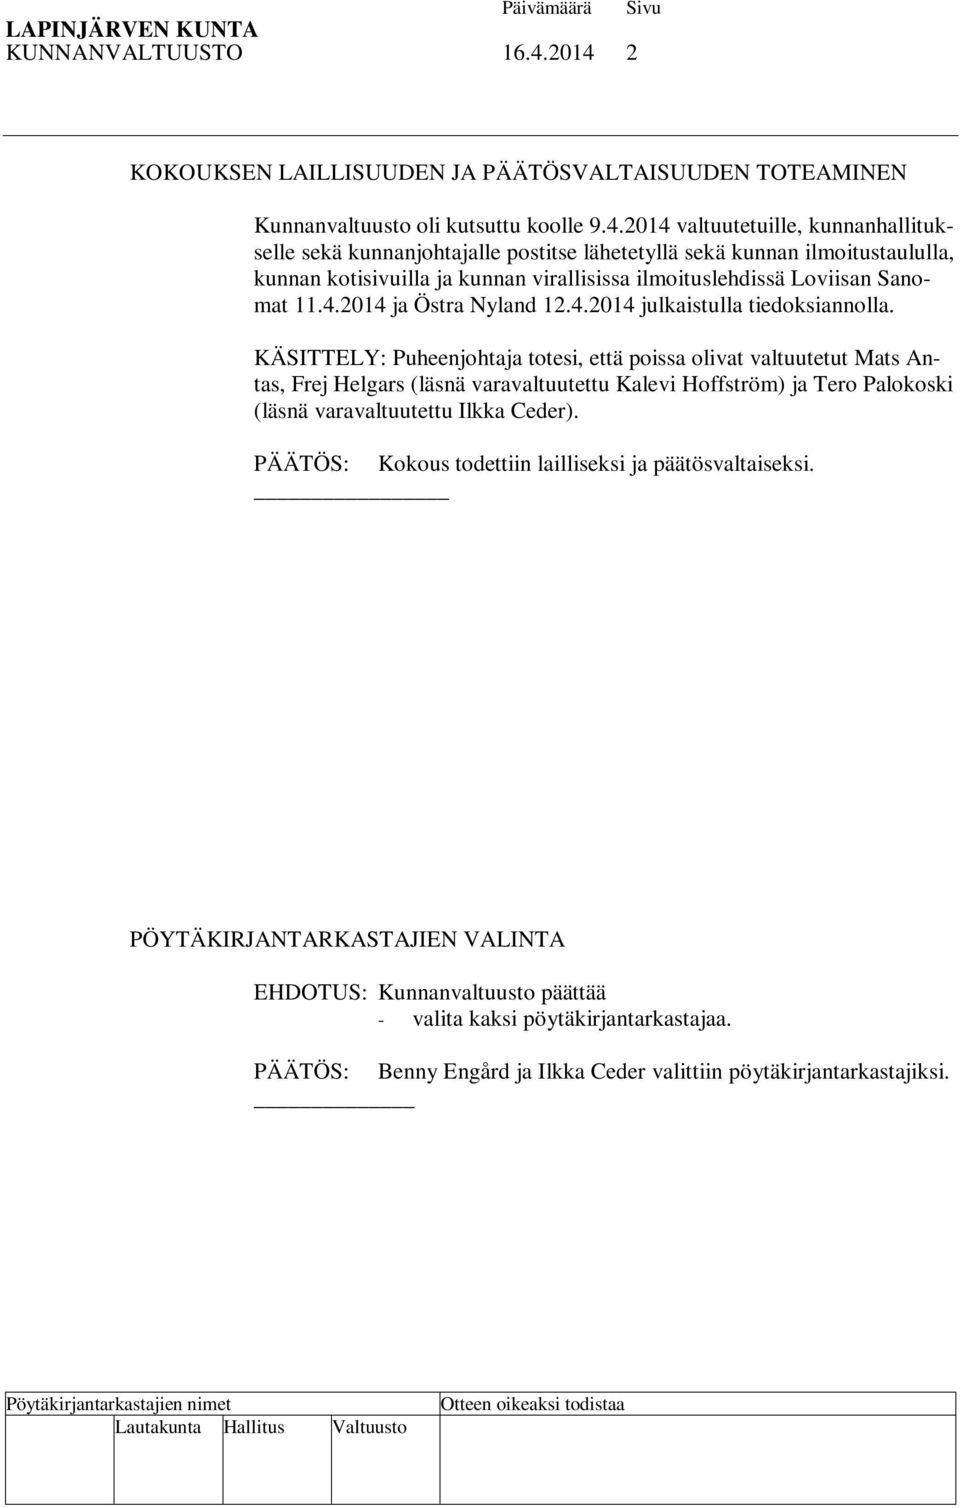 4.2014 ja Östra Nyland 12.4.2014 julkaistulla tiedoksiannolla.